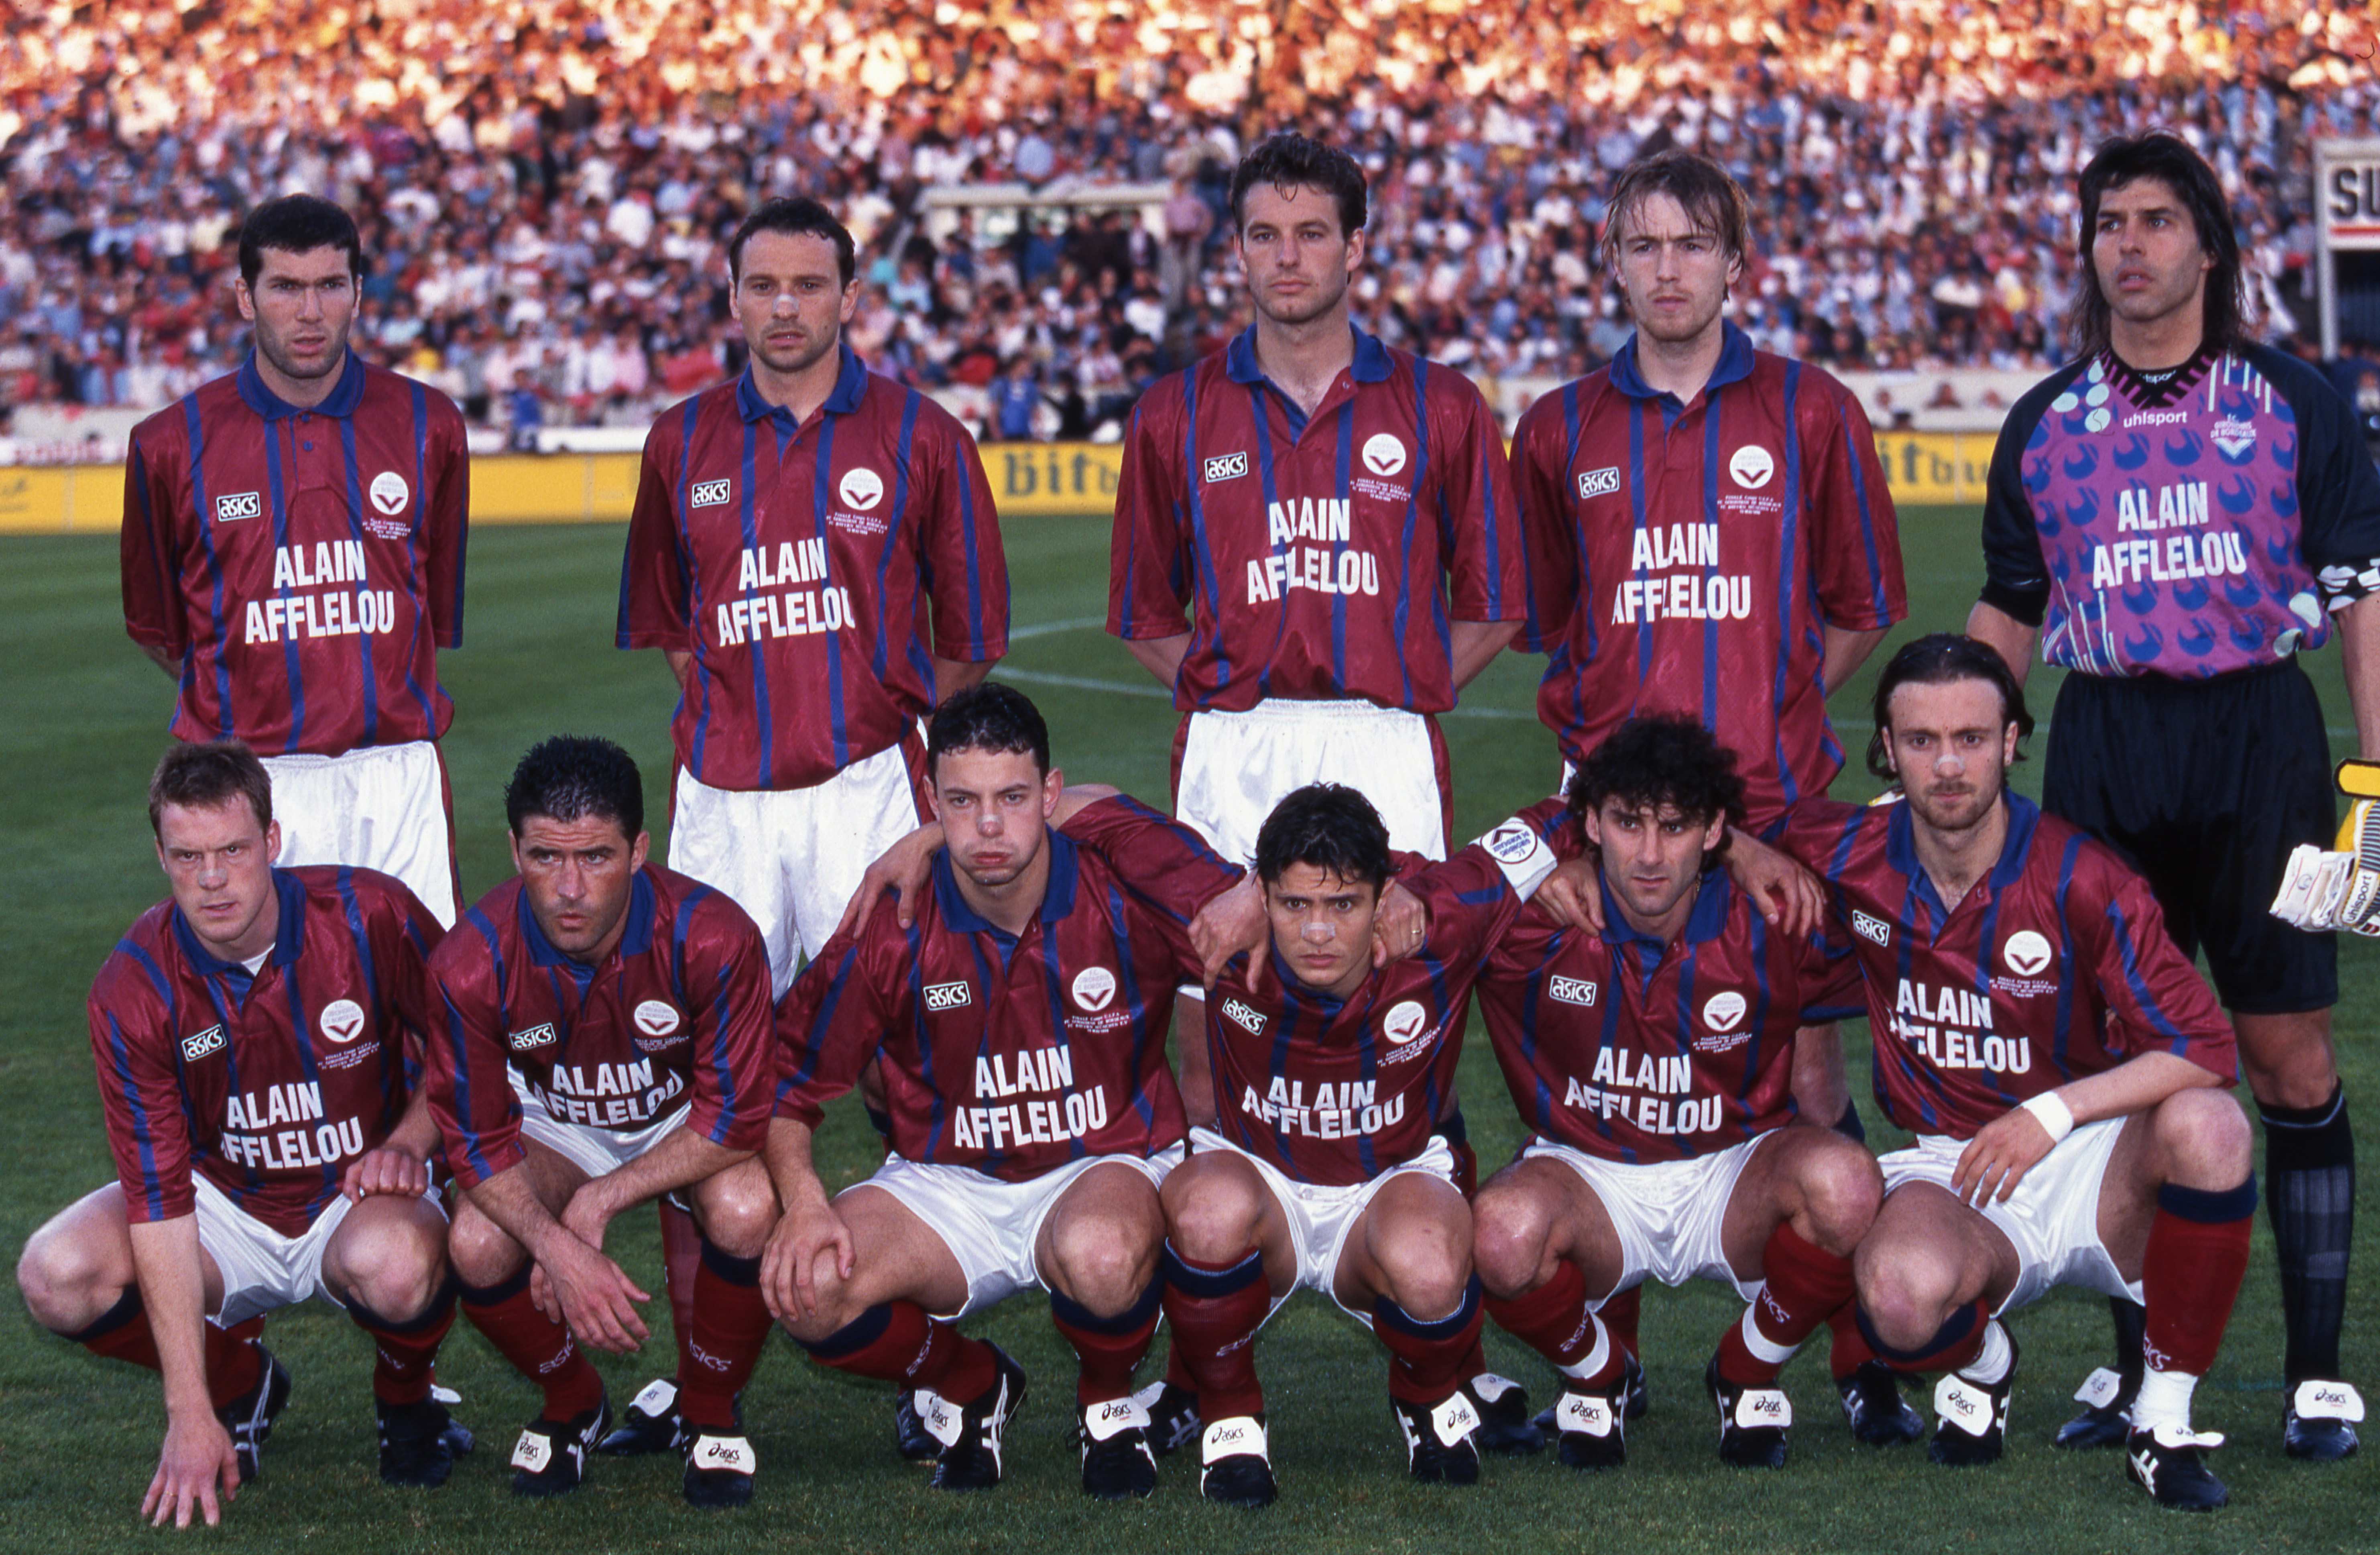 The famous Girondins de Bordeaux team 1995-1996